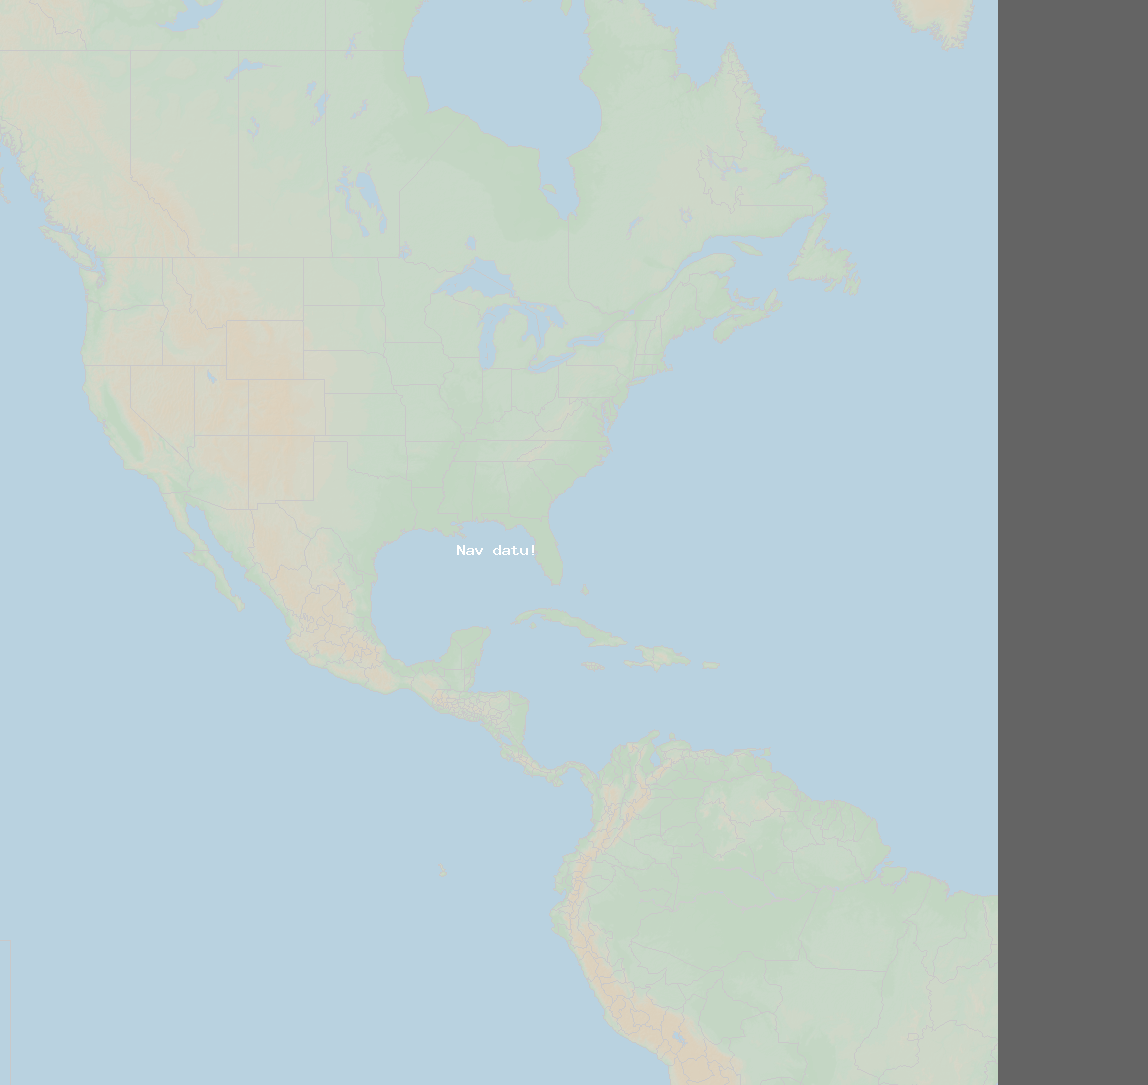 Dalības attiecība (Stacija Kilauea 2) North America 2024 